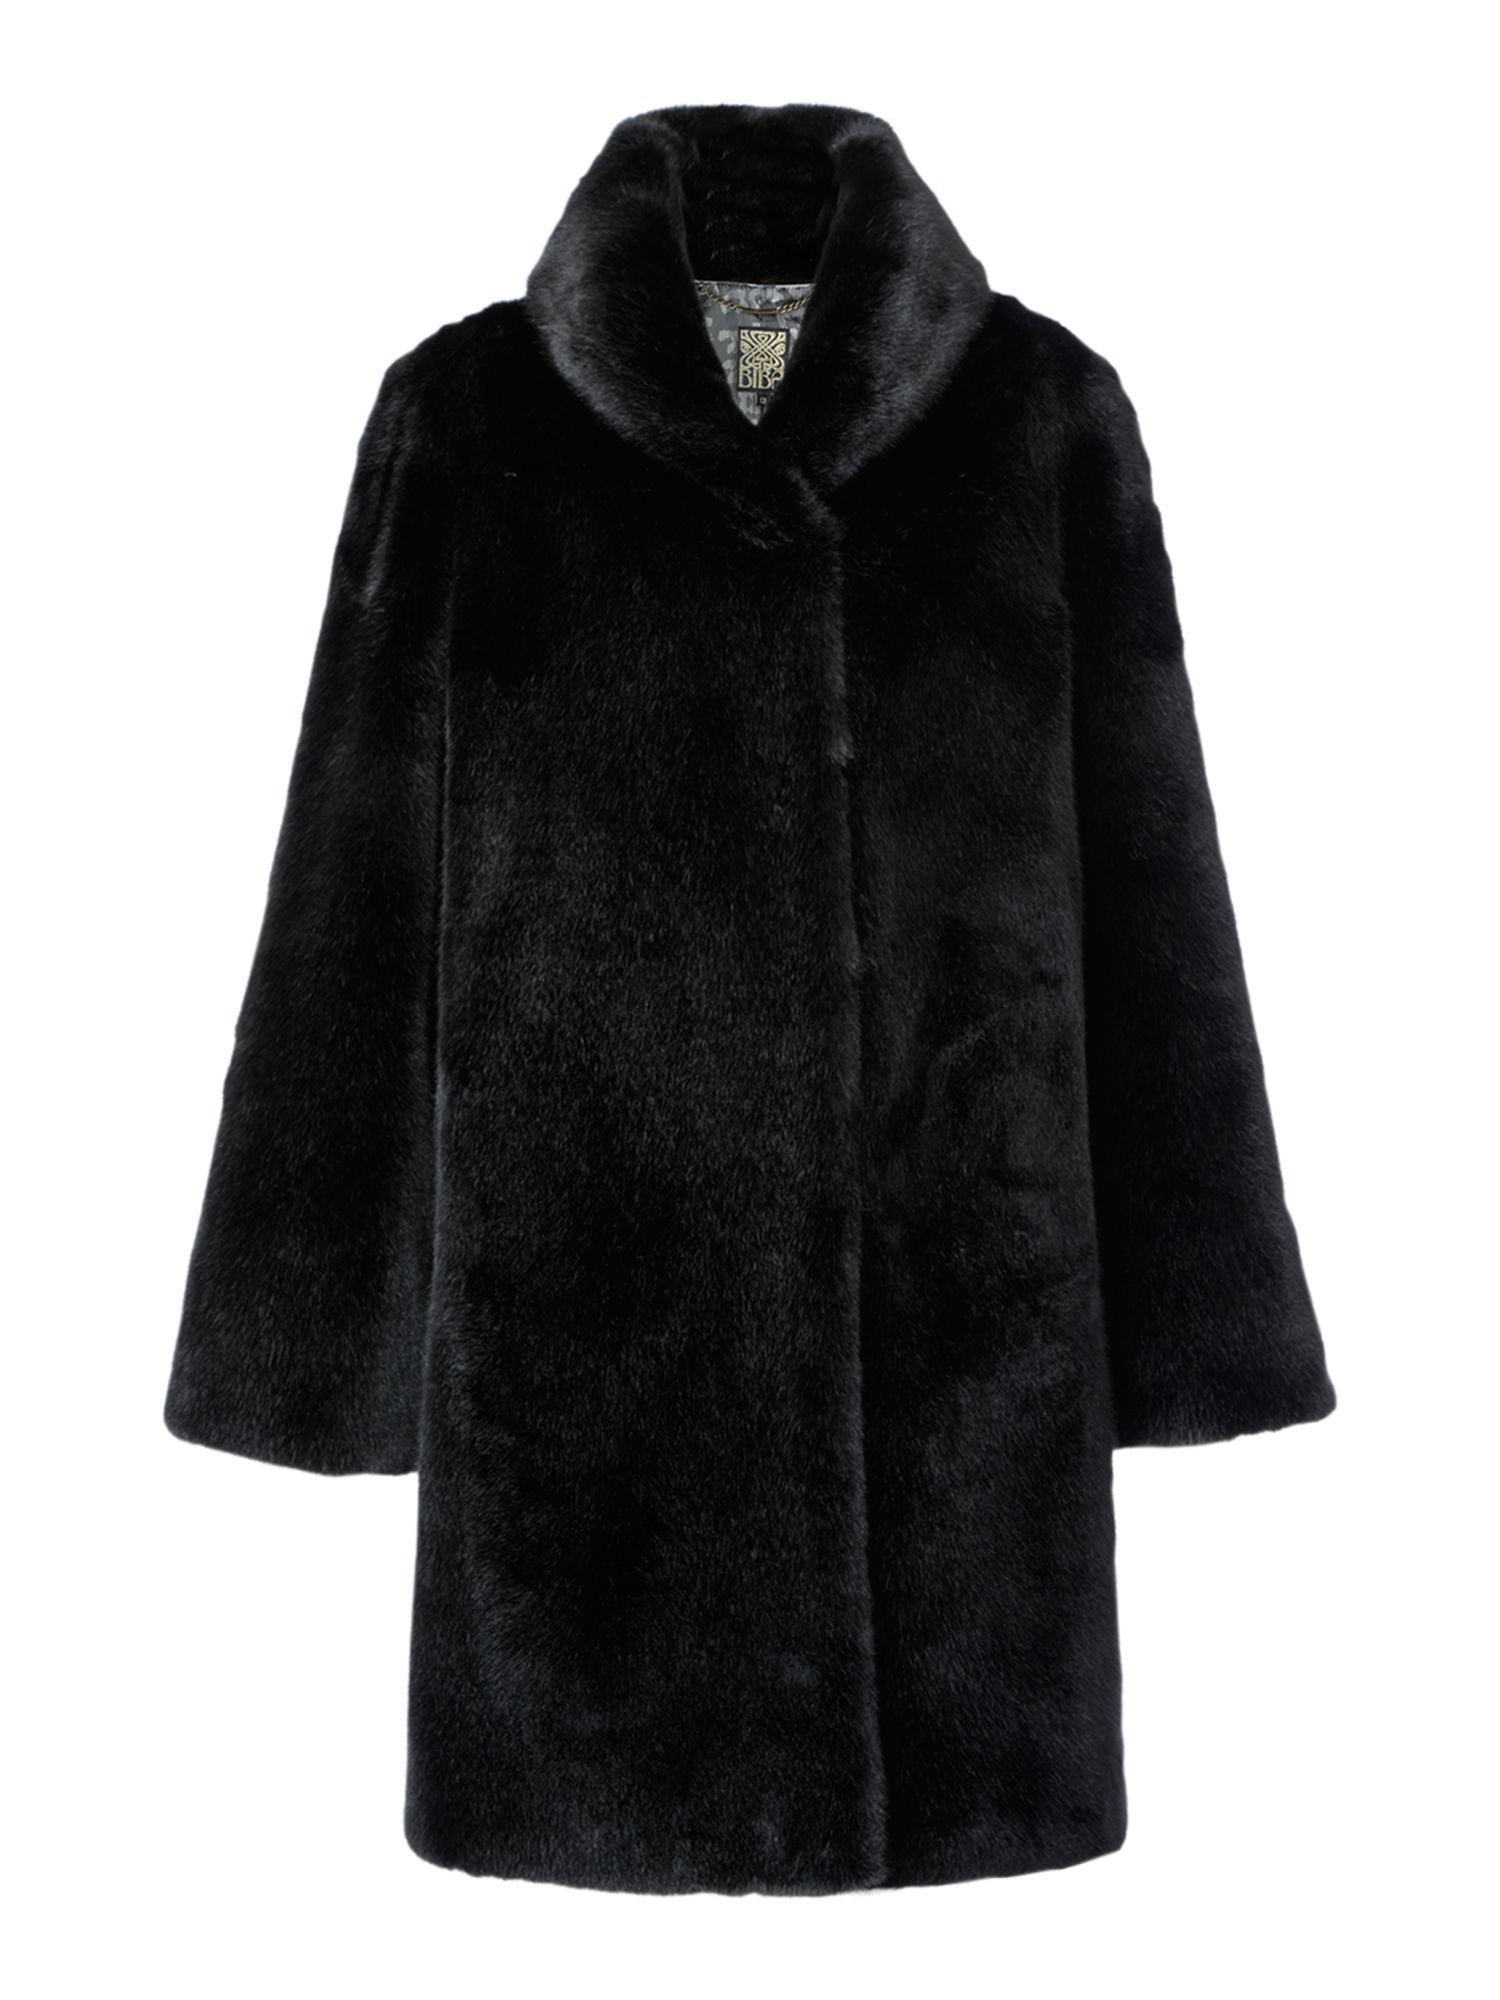 Biba Luxurious Fur Portobello Coat in Black | Lyst